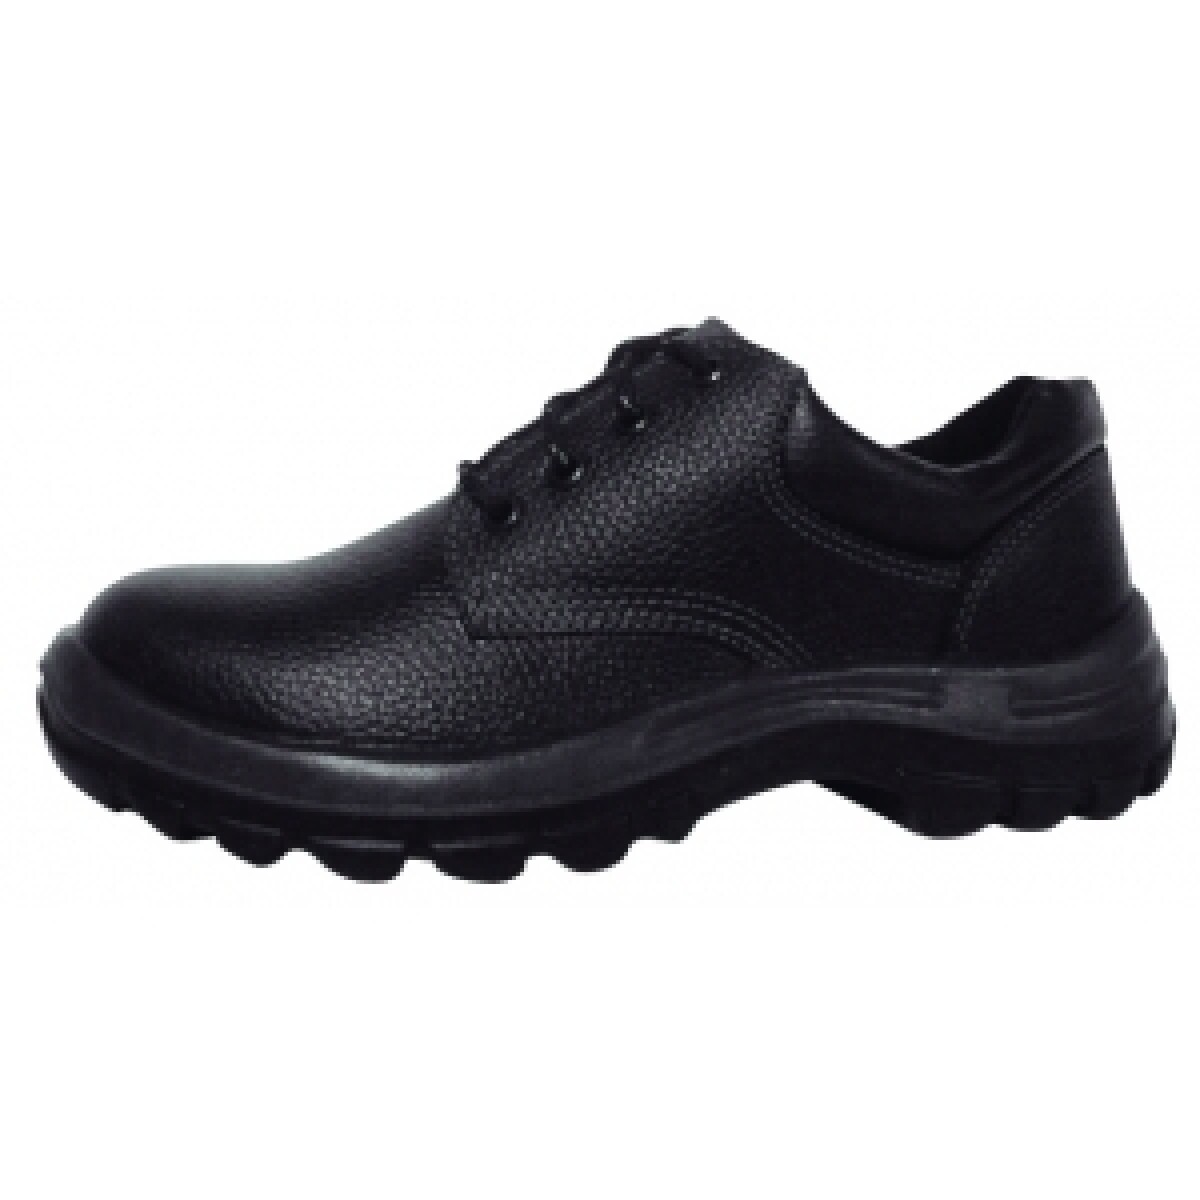 Zapato de Trabajo Con Puntera Plástica - Negro Worksafe 